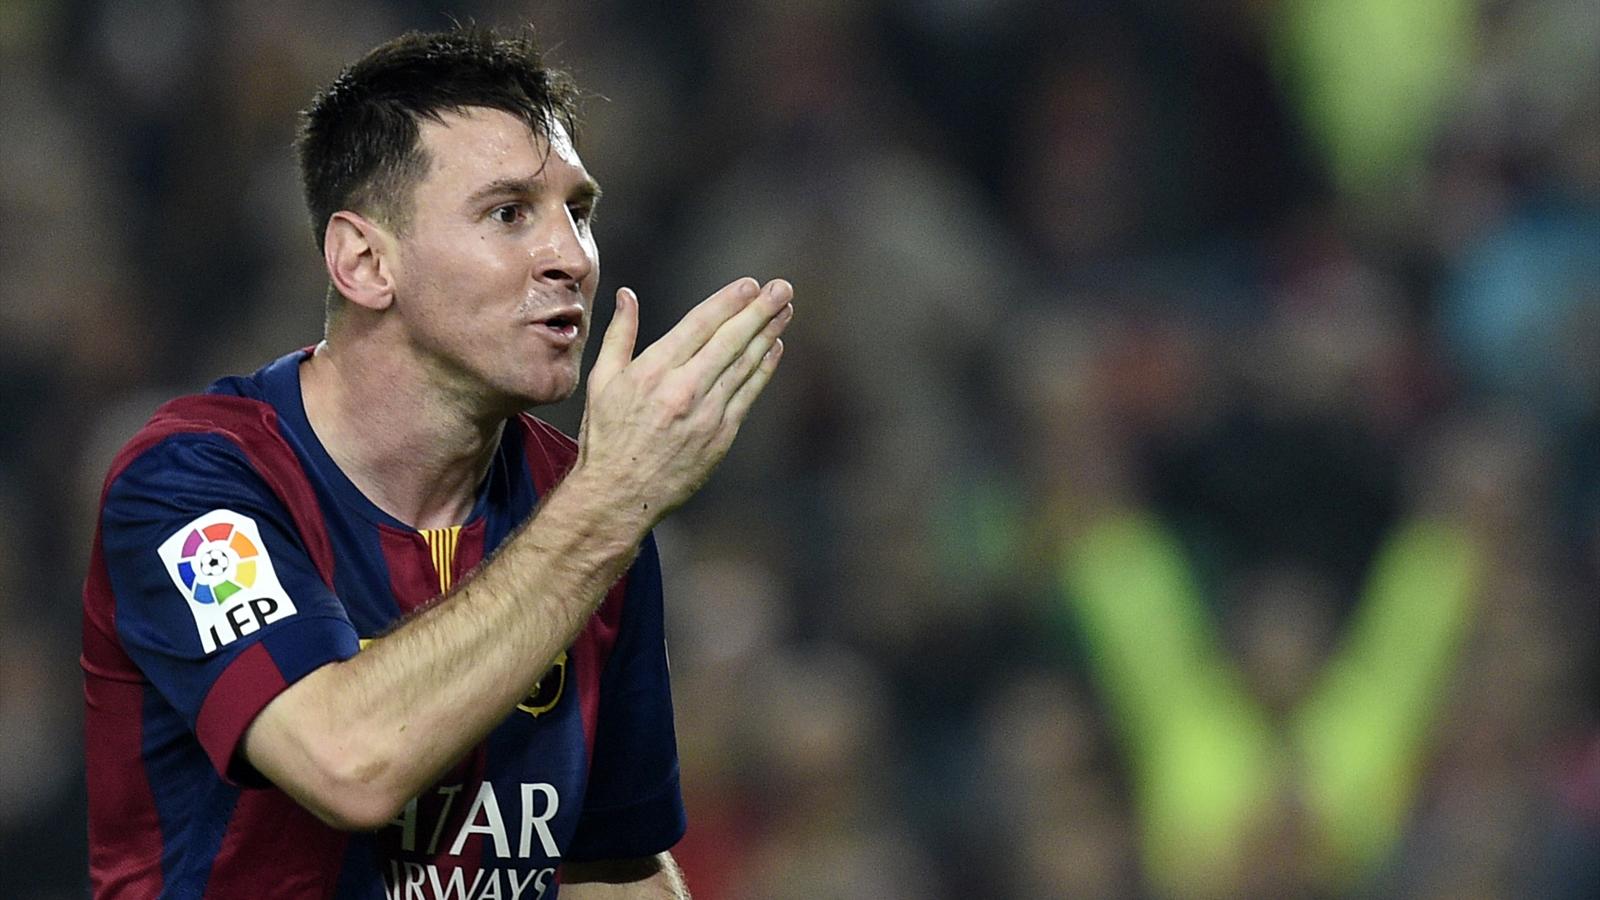 Liga : Messi-Luis Enrique, symbole des tensions d'un Barça qui joue gros face à l'Atlético